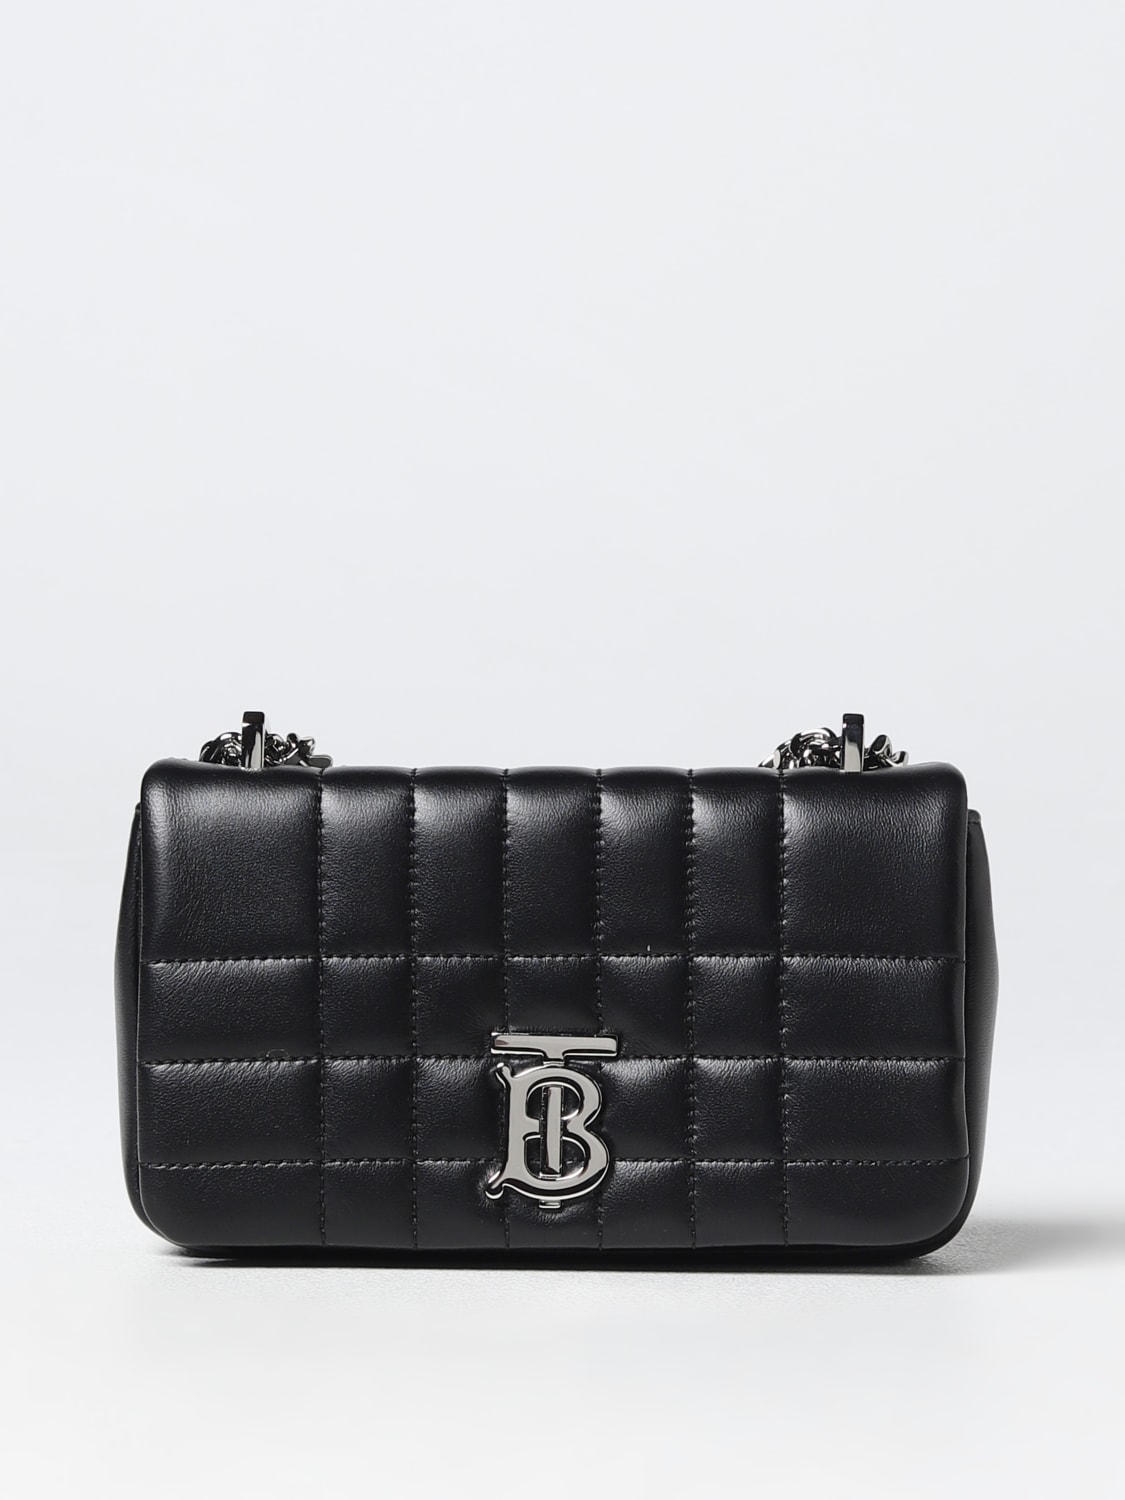 Women's Burberry Handbags